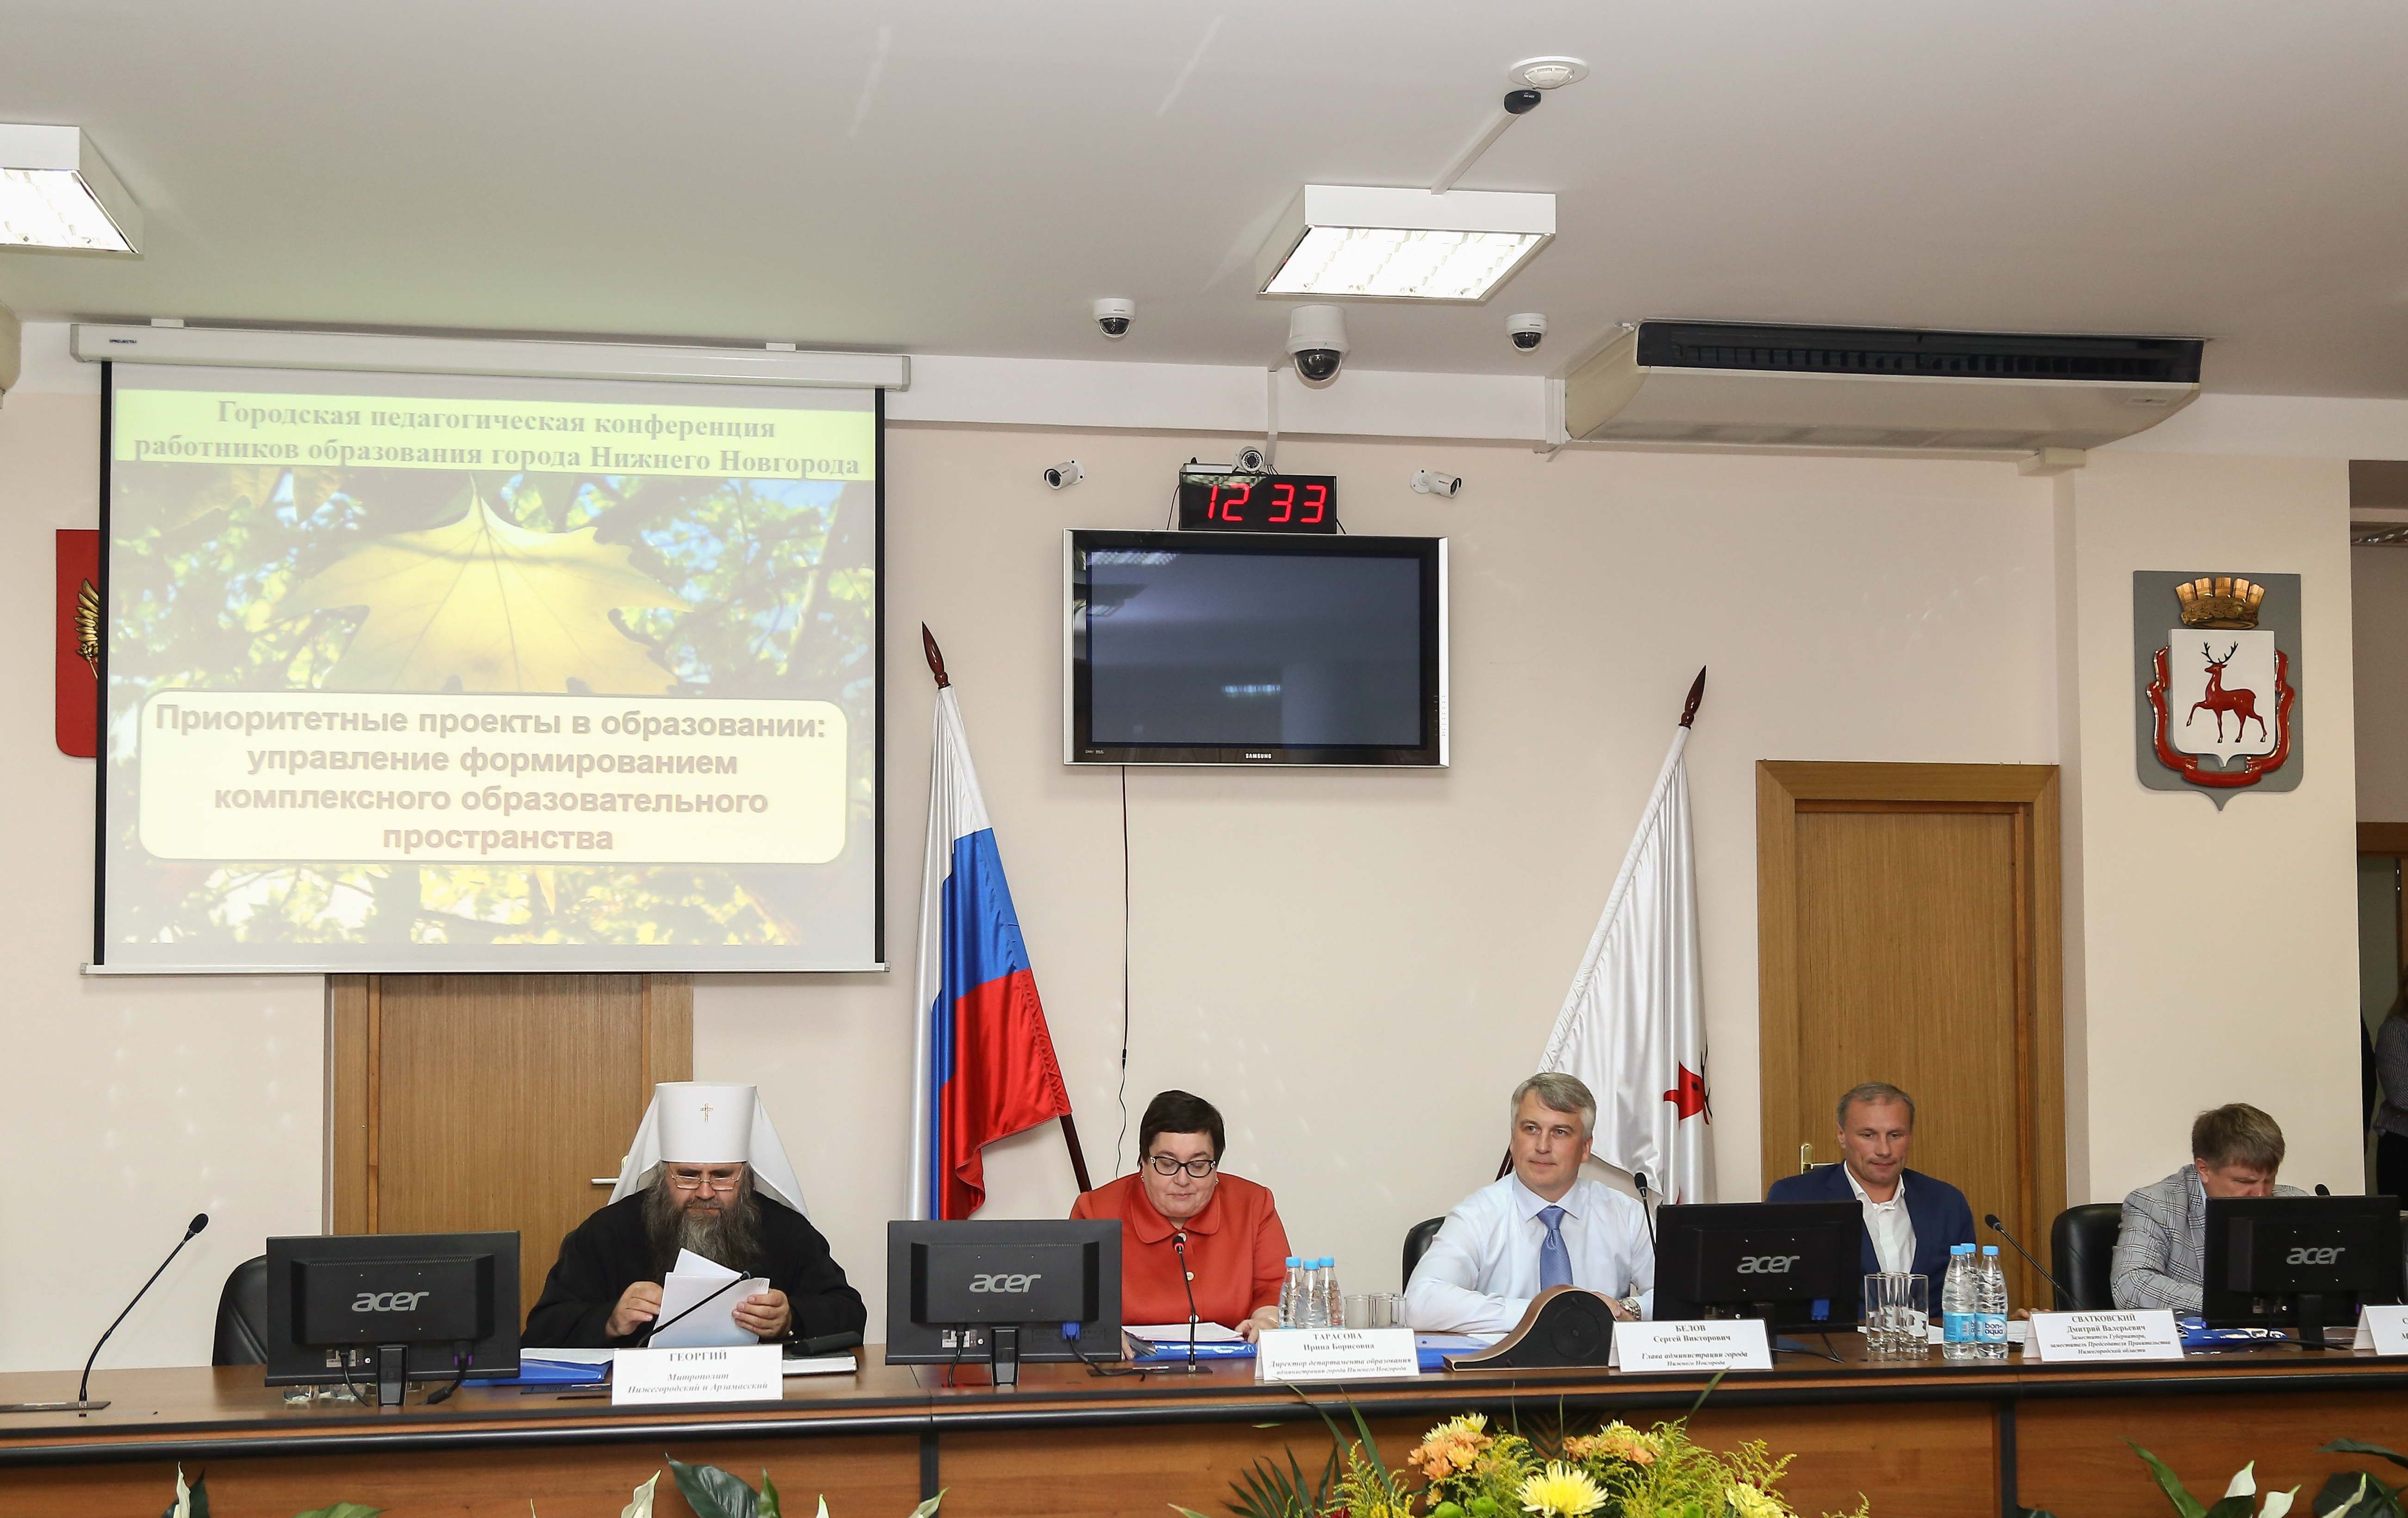 Ежегодная педагогическая конференция состоялась в Нижнем Новгороде - фото 1